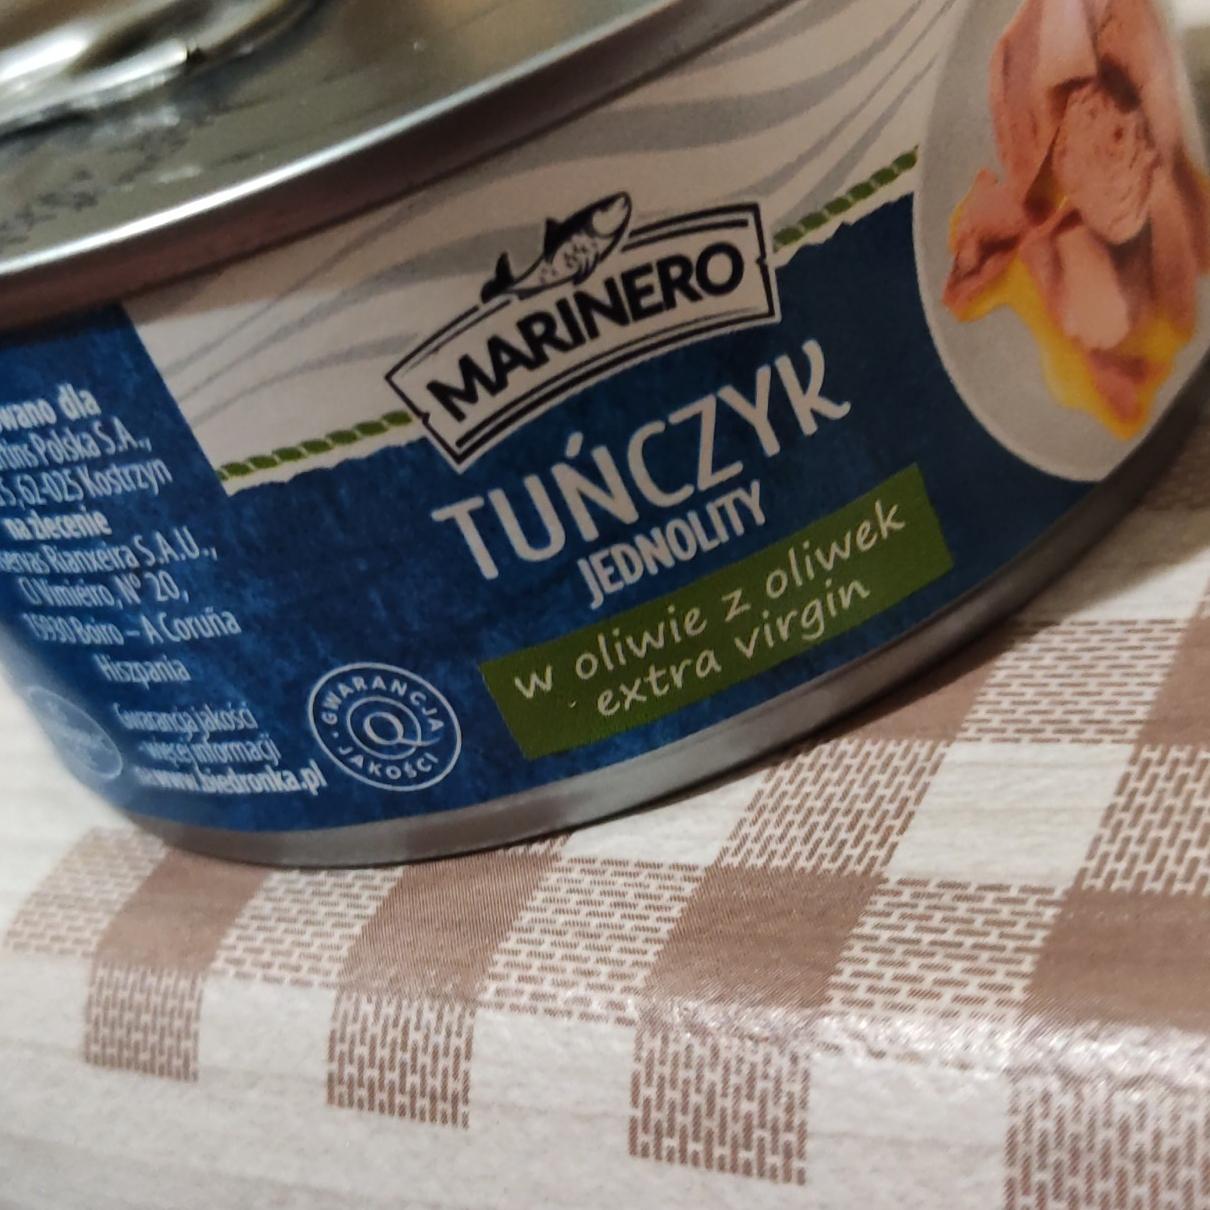 Фото - тунец в оливковом масле консервированный Marinero